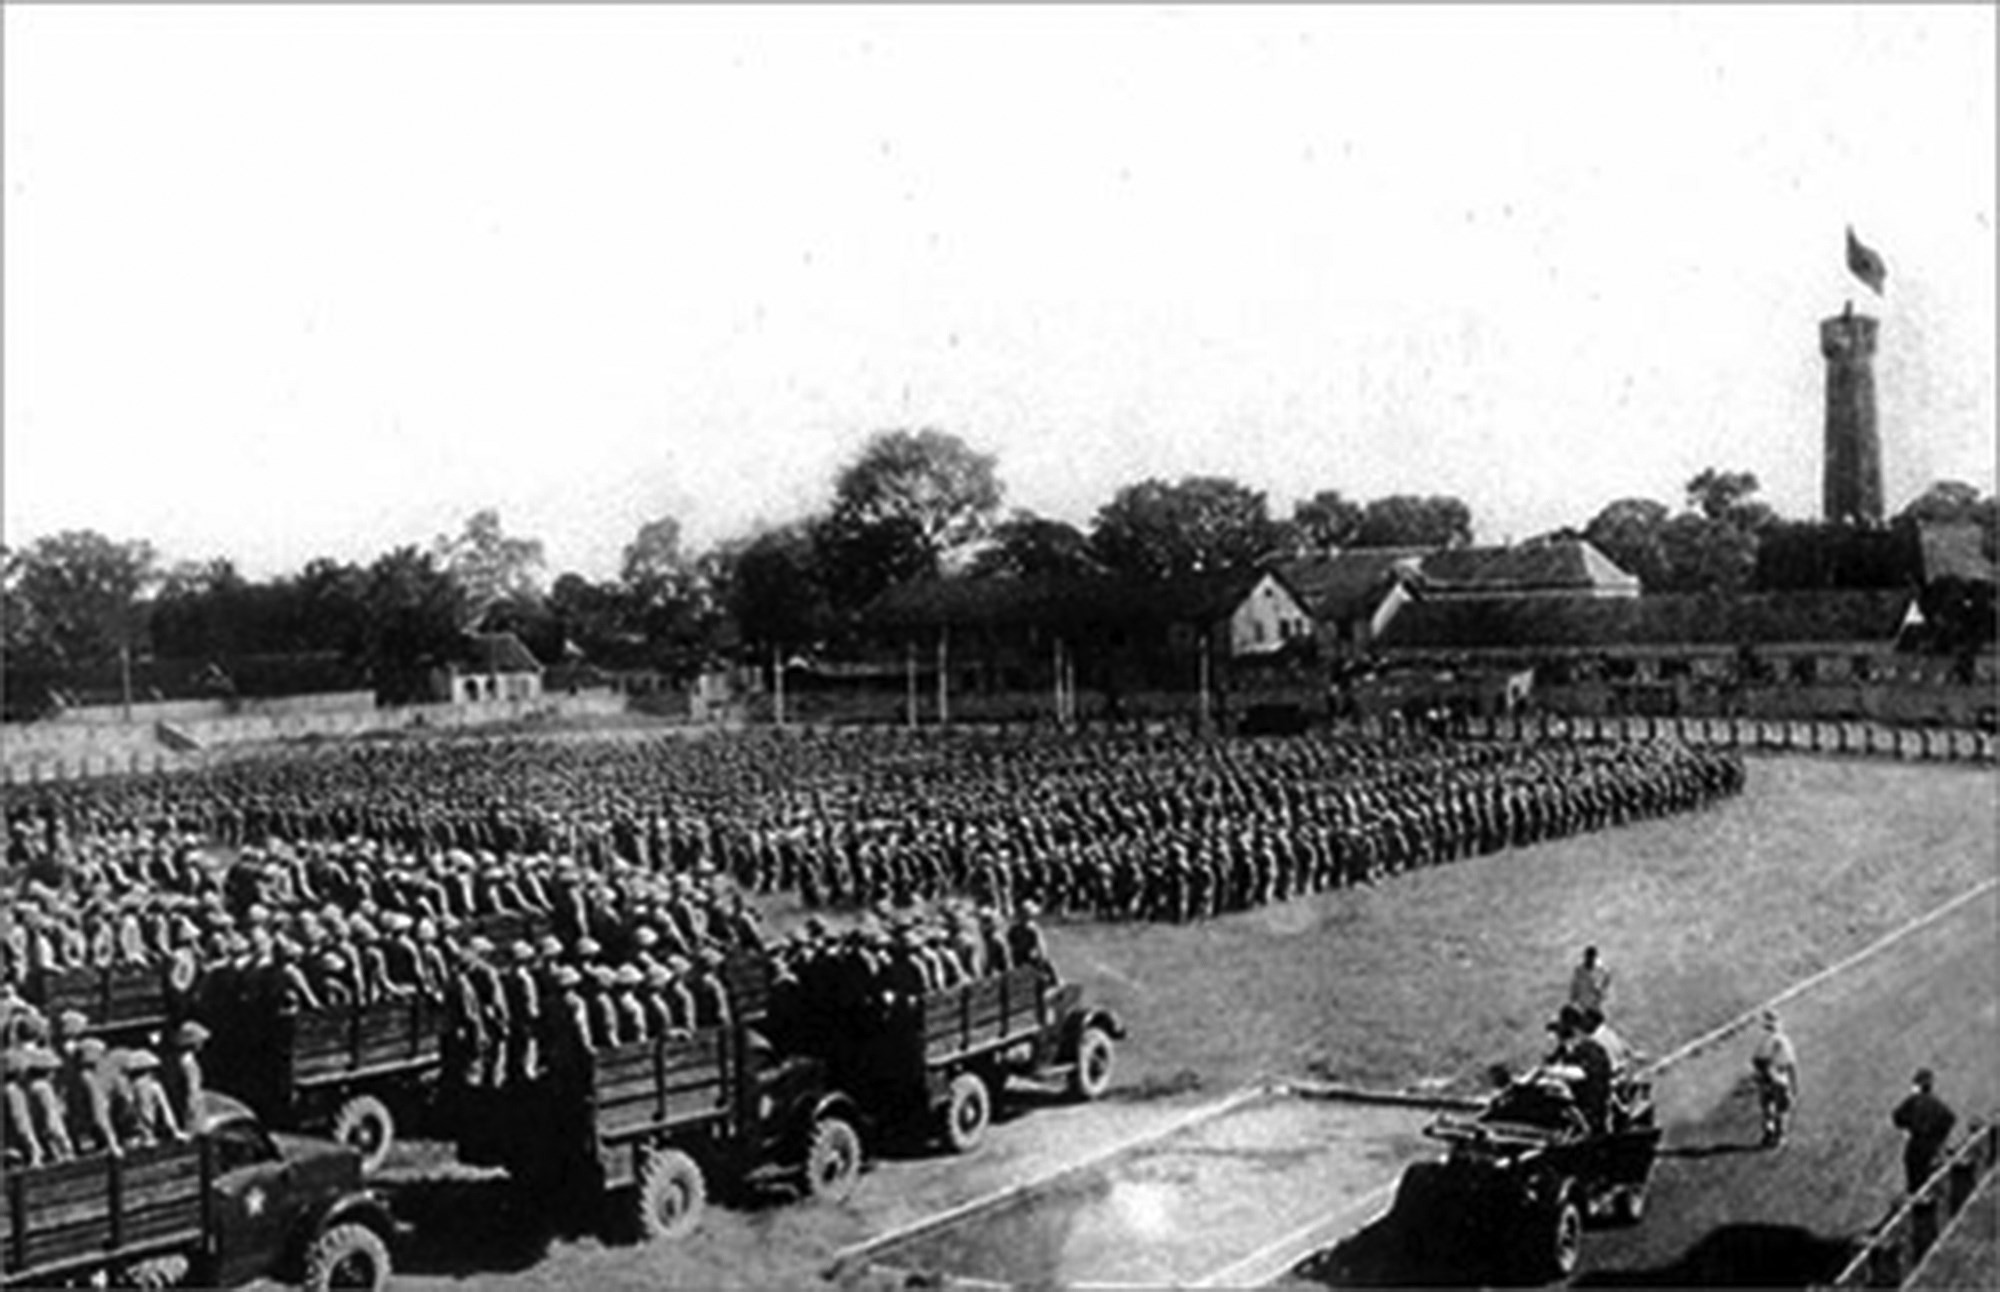  Đại đoàn 308 Quân tiên phong tại lễ chào cờ ở sân Manzin (nay là sân cột cờ), chiều ngày 10/10/1954 